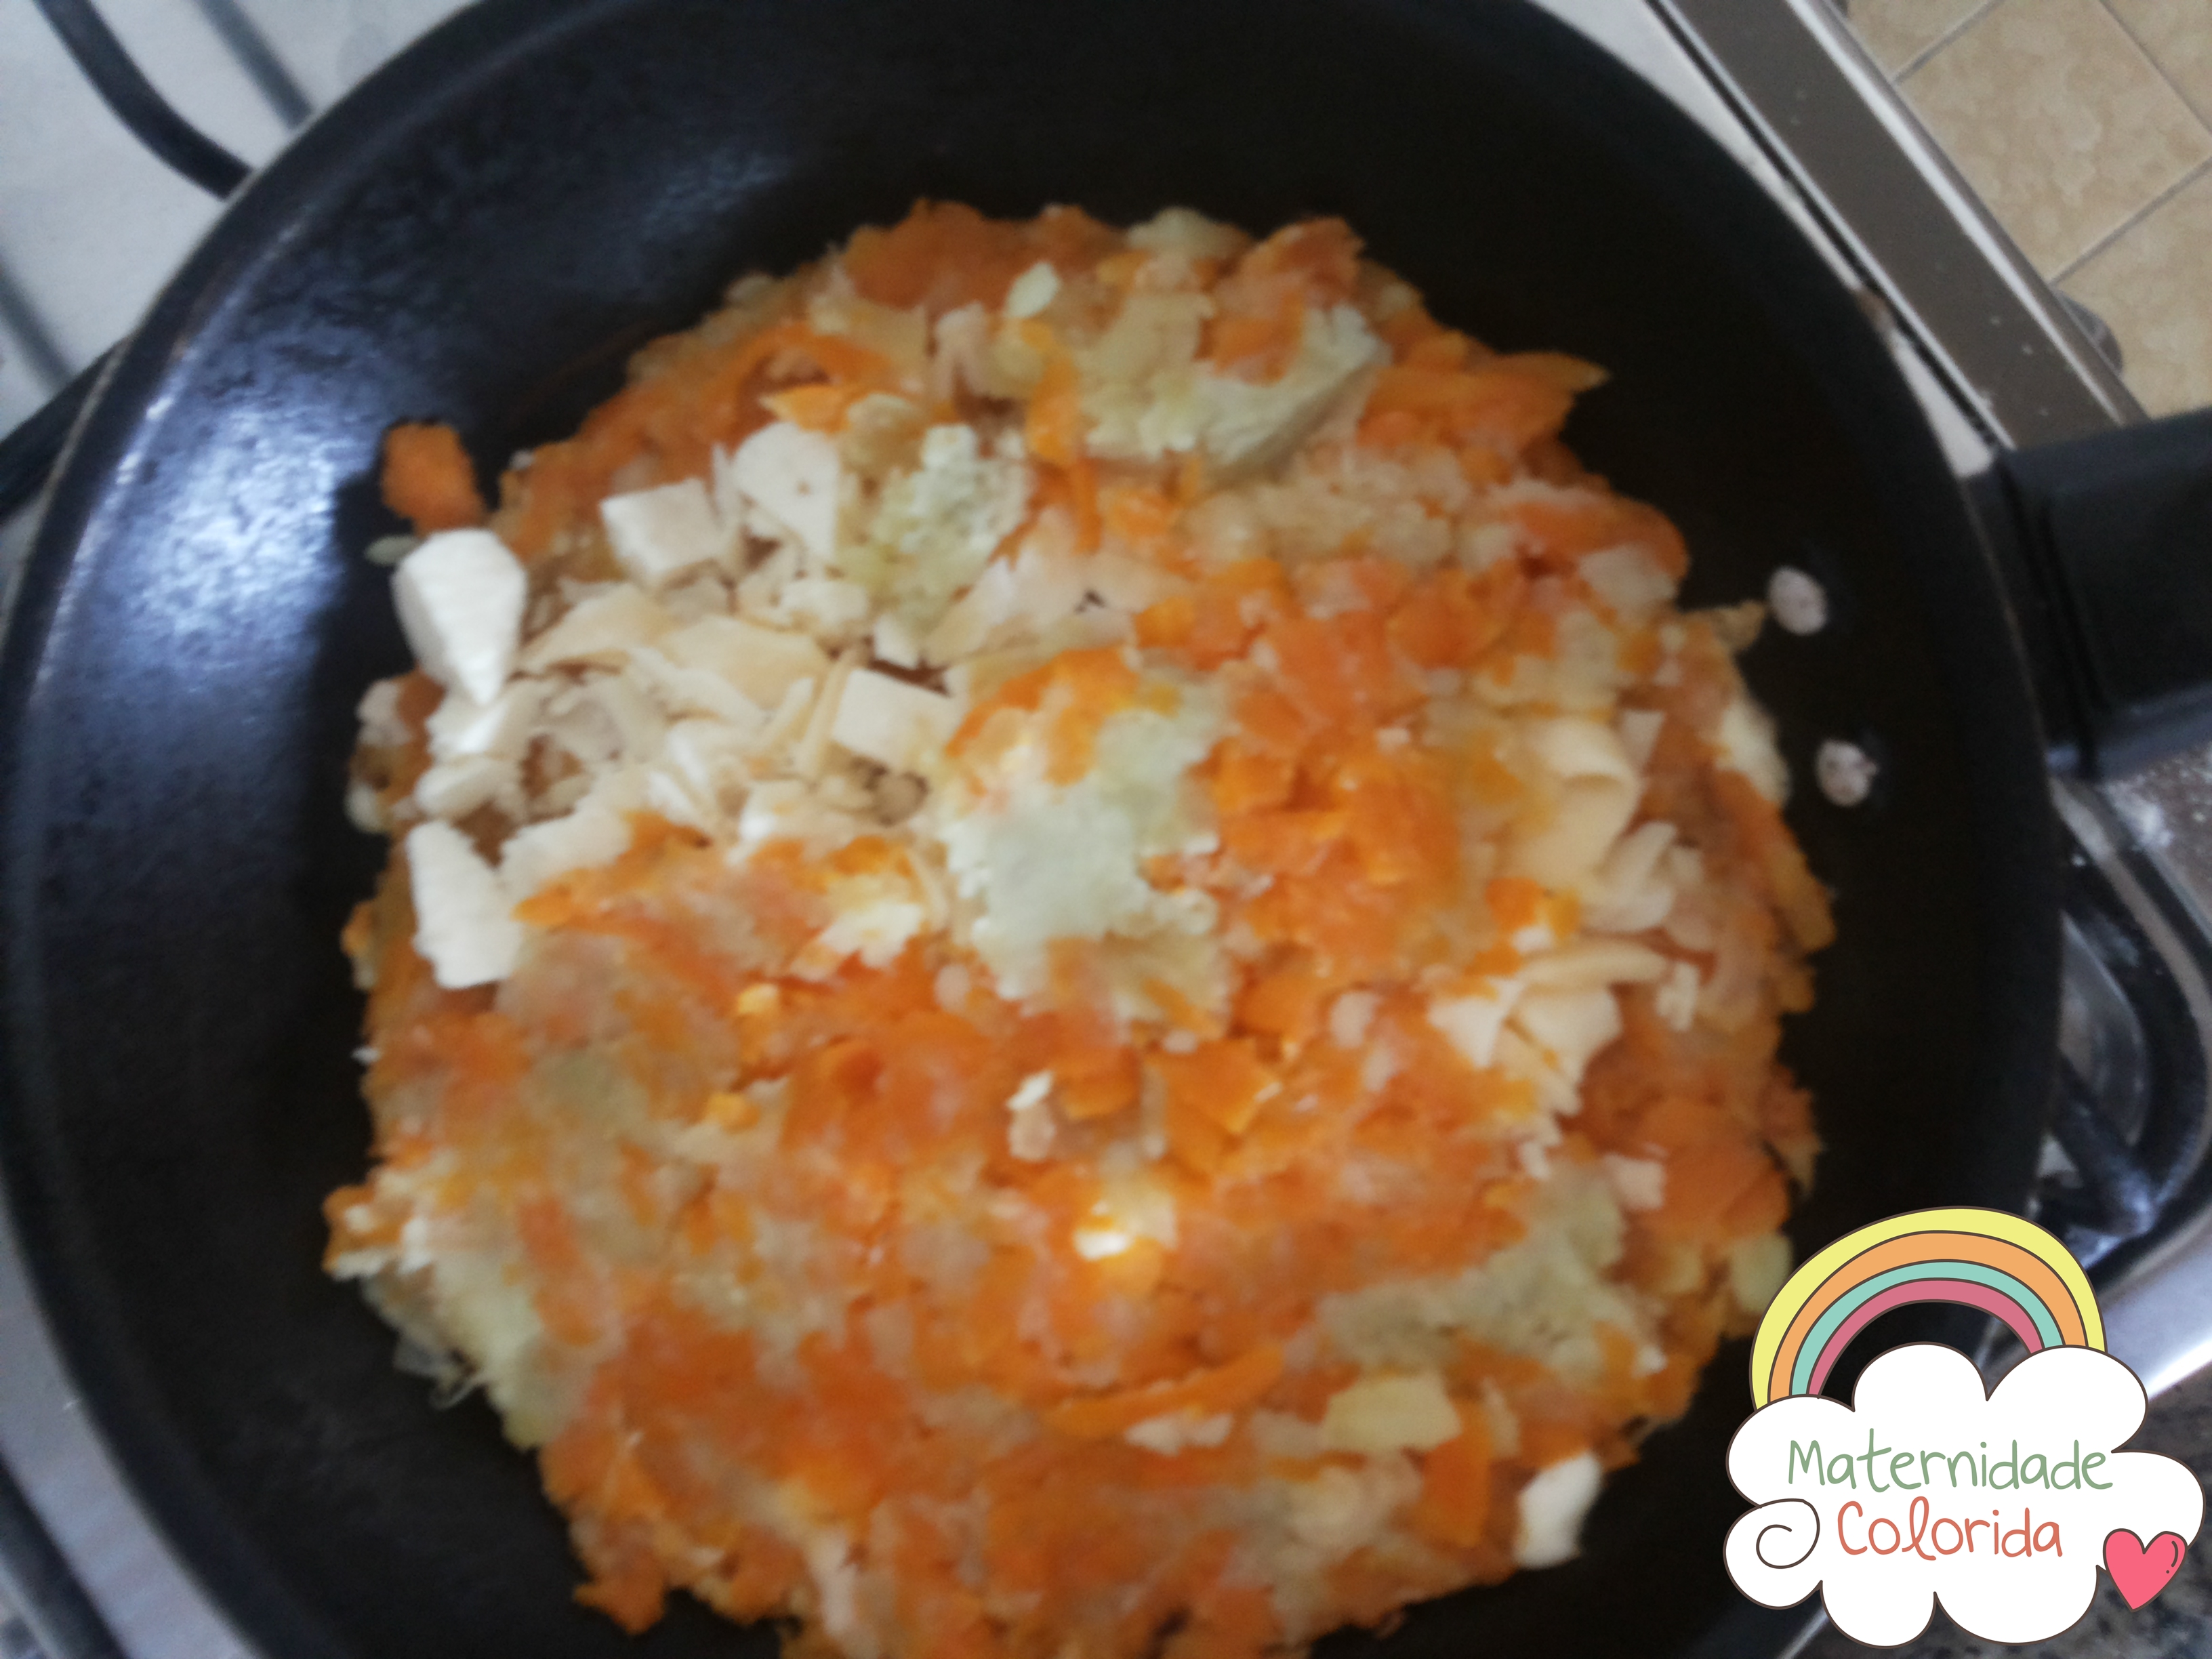 batata doce e cenoura rostie recheada com queijo